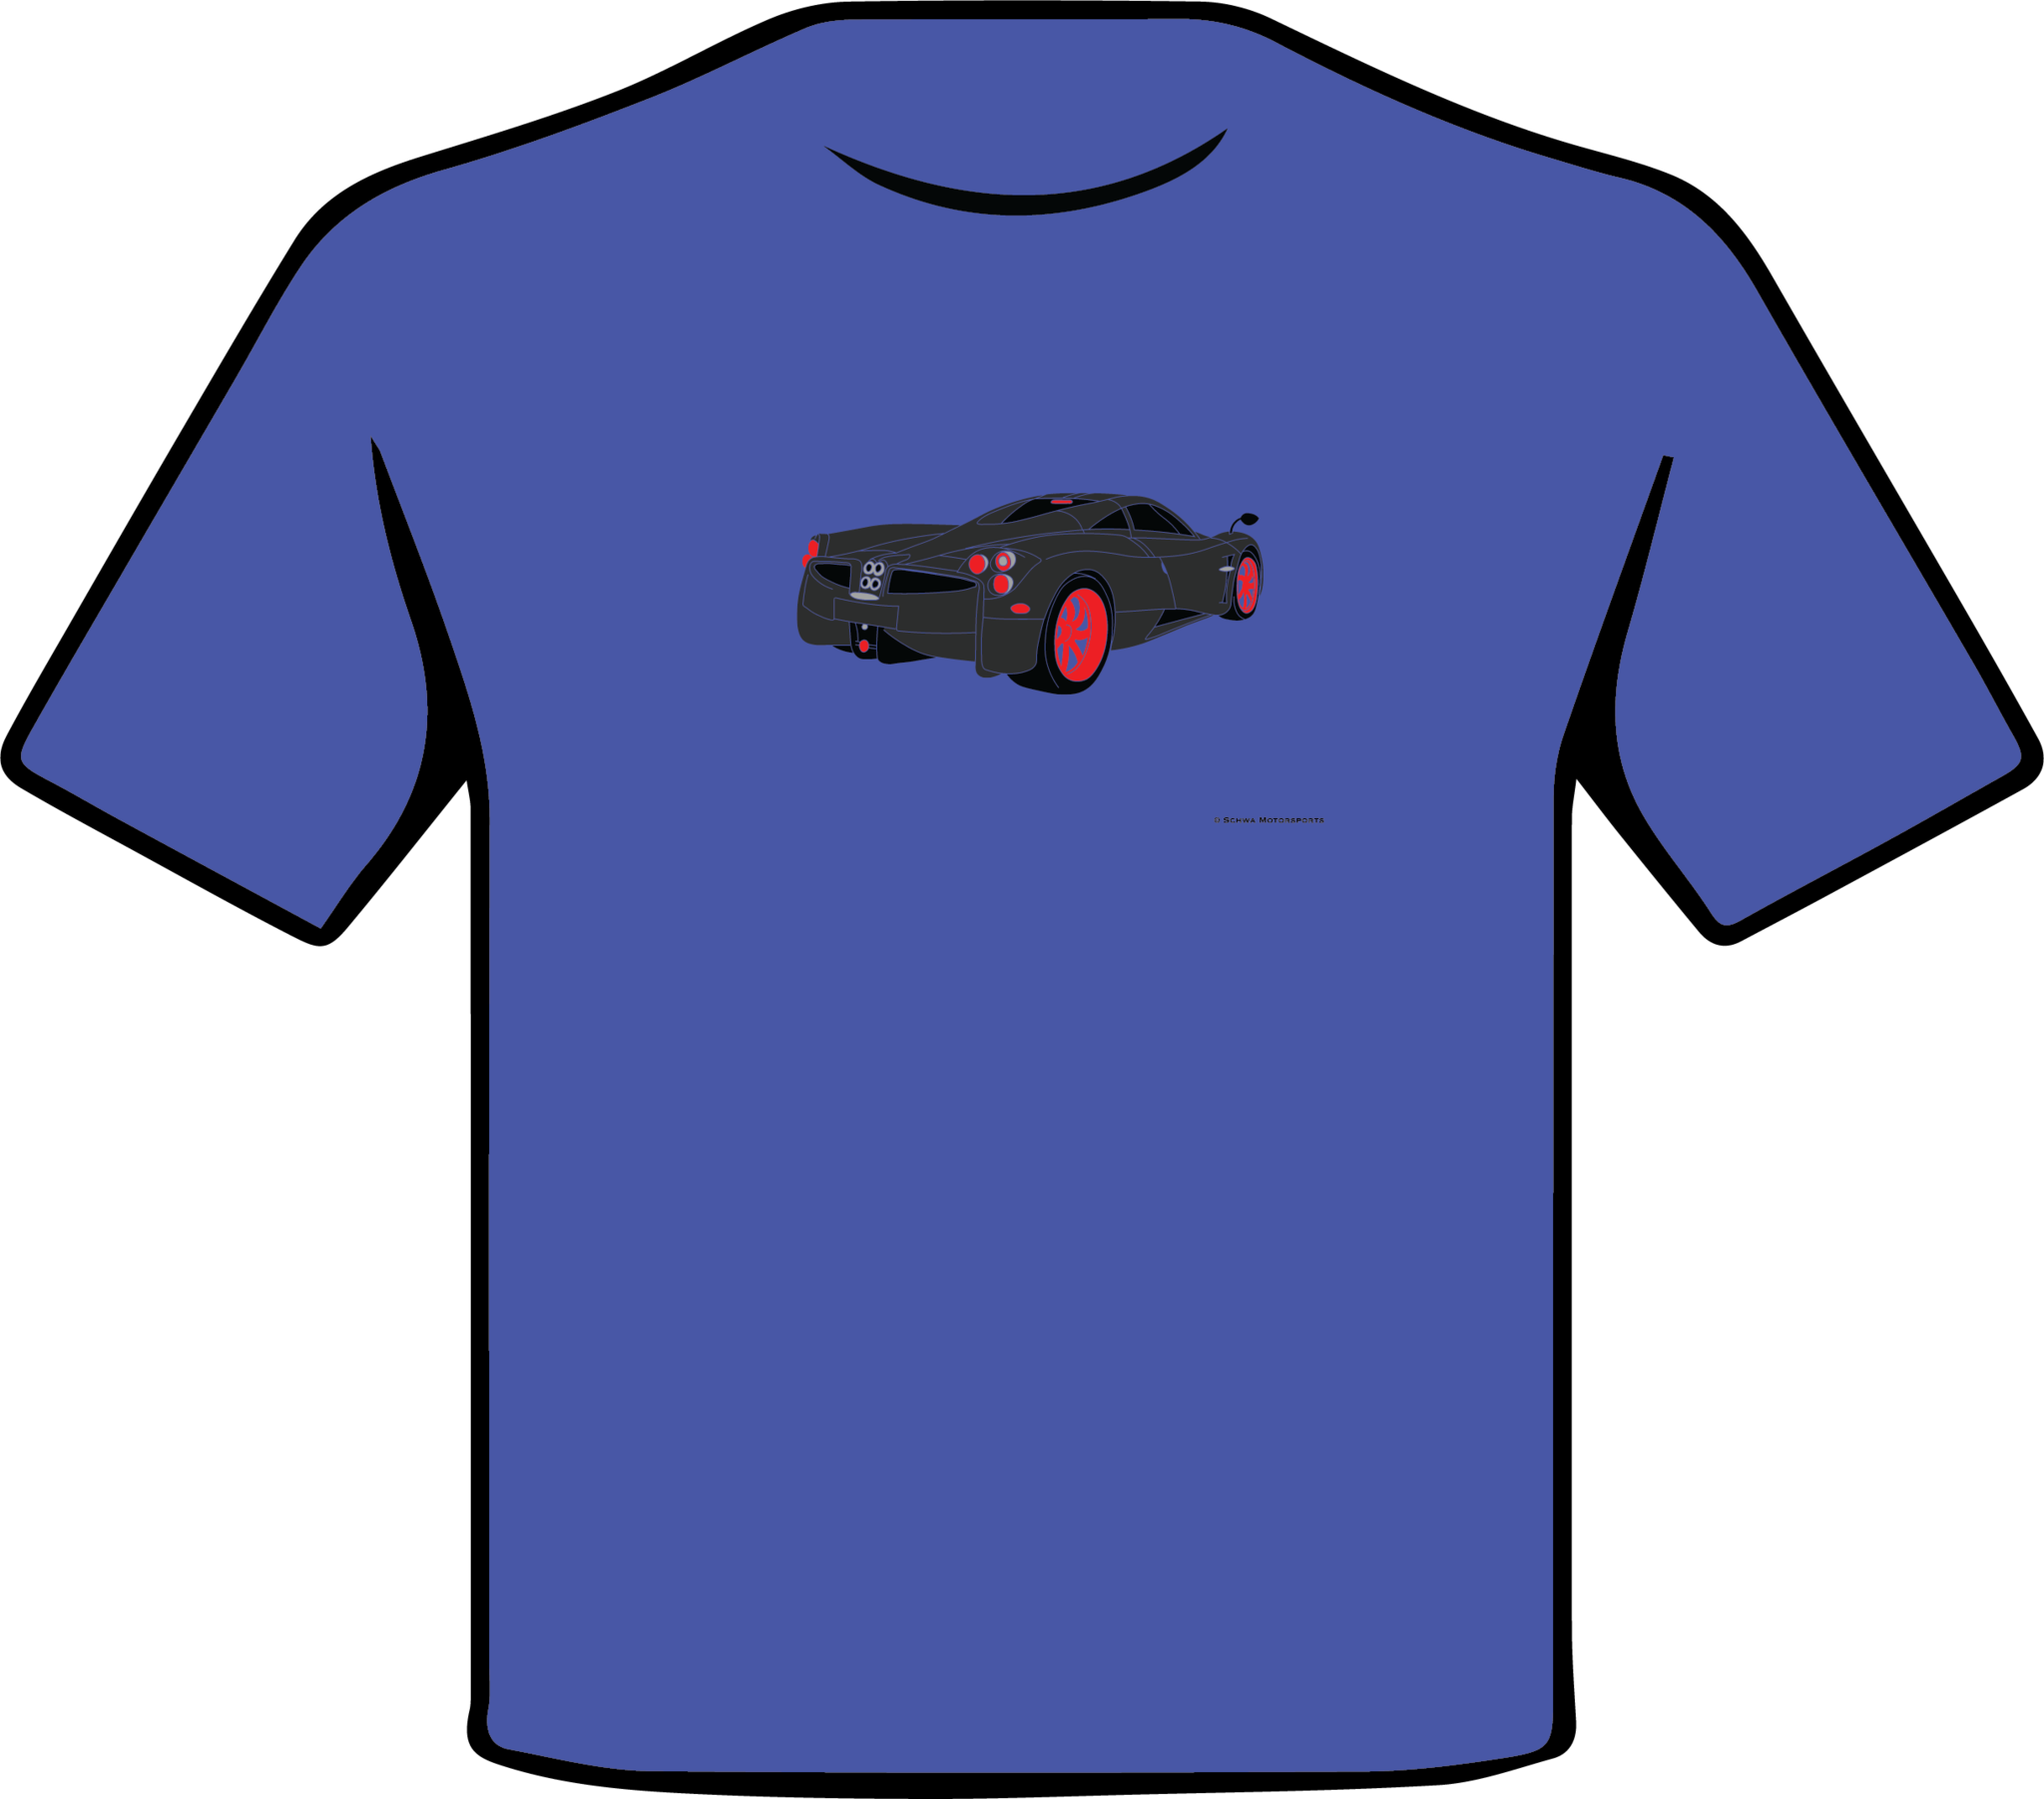 Pagani Huarya Rear 3/4 Angle View T-Shirt